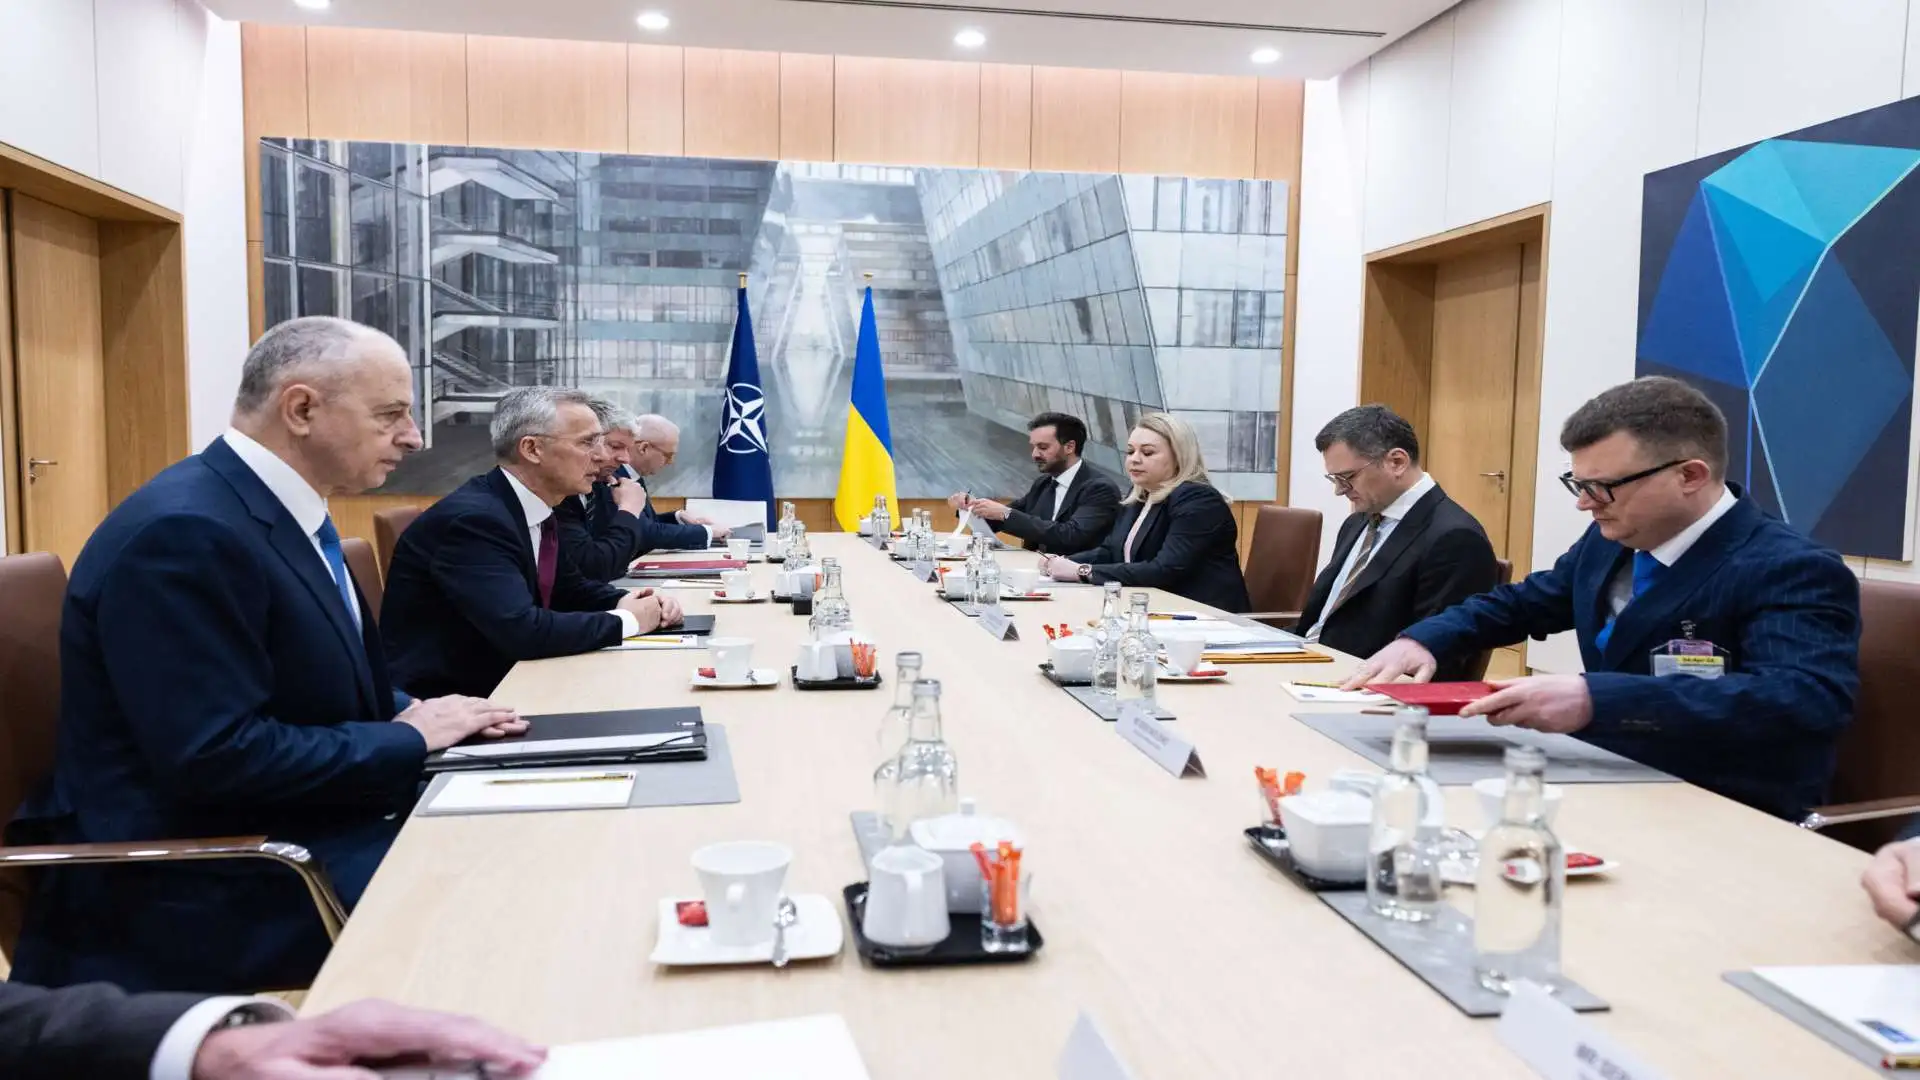 Imaginea întâlnirii dintre secretarul general al NATO, Jens Stoltenberg și ministrul de externe al Ucrainei, Dmîtro Kuleba